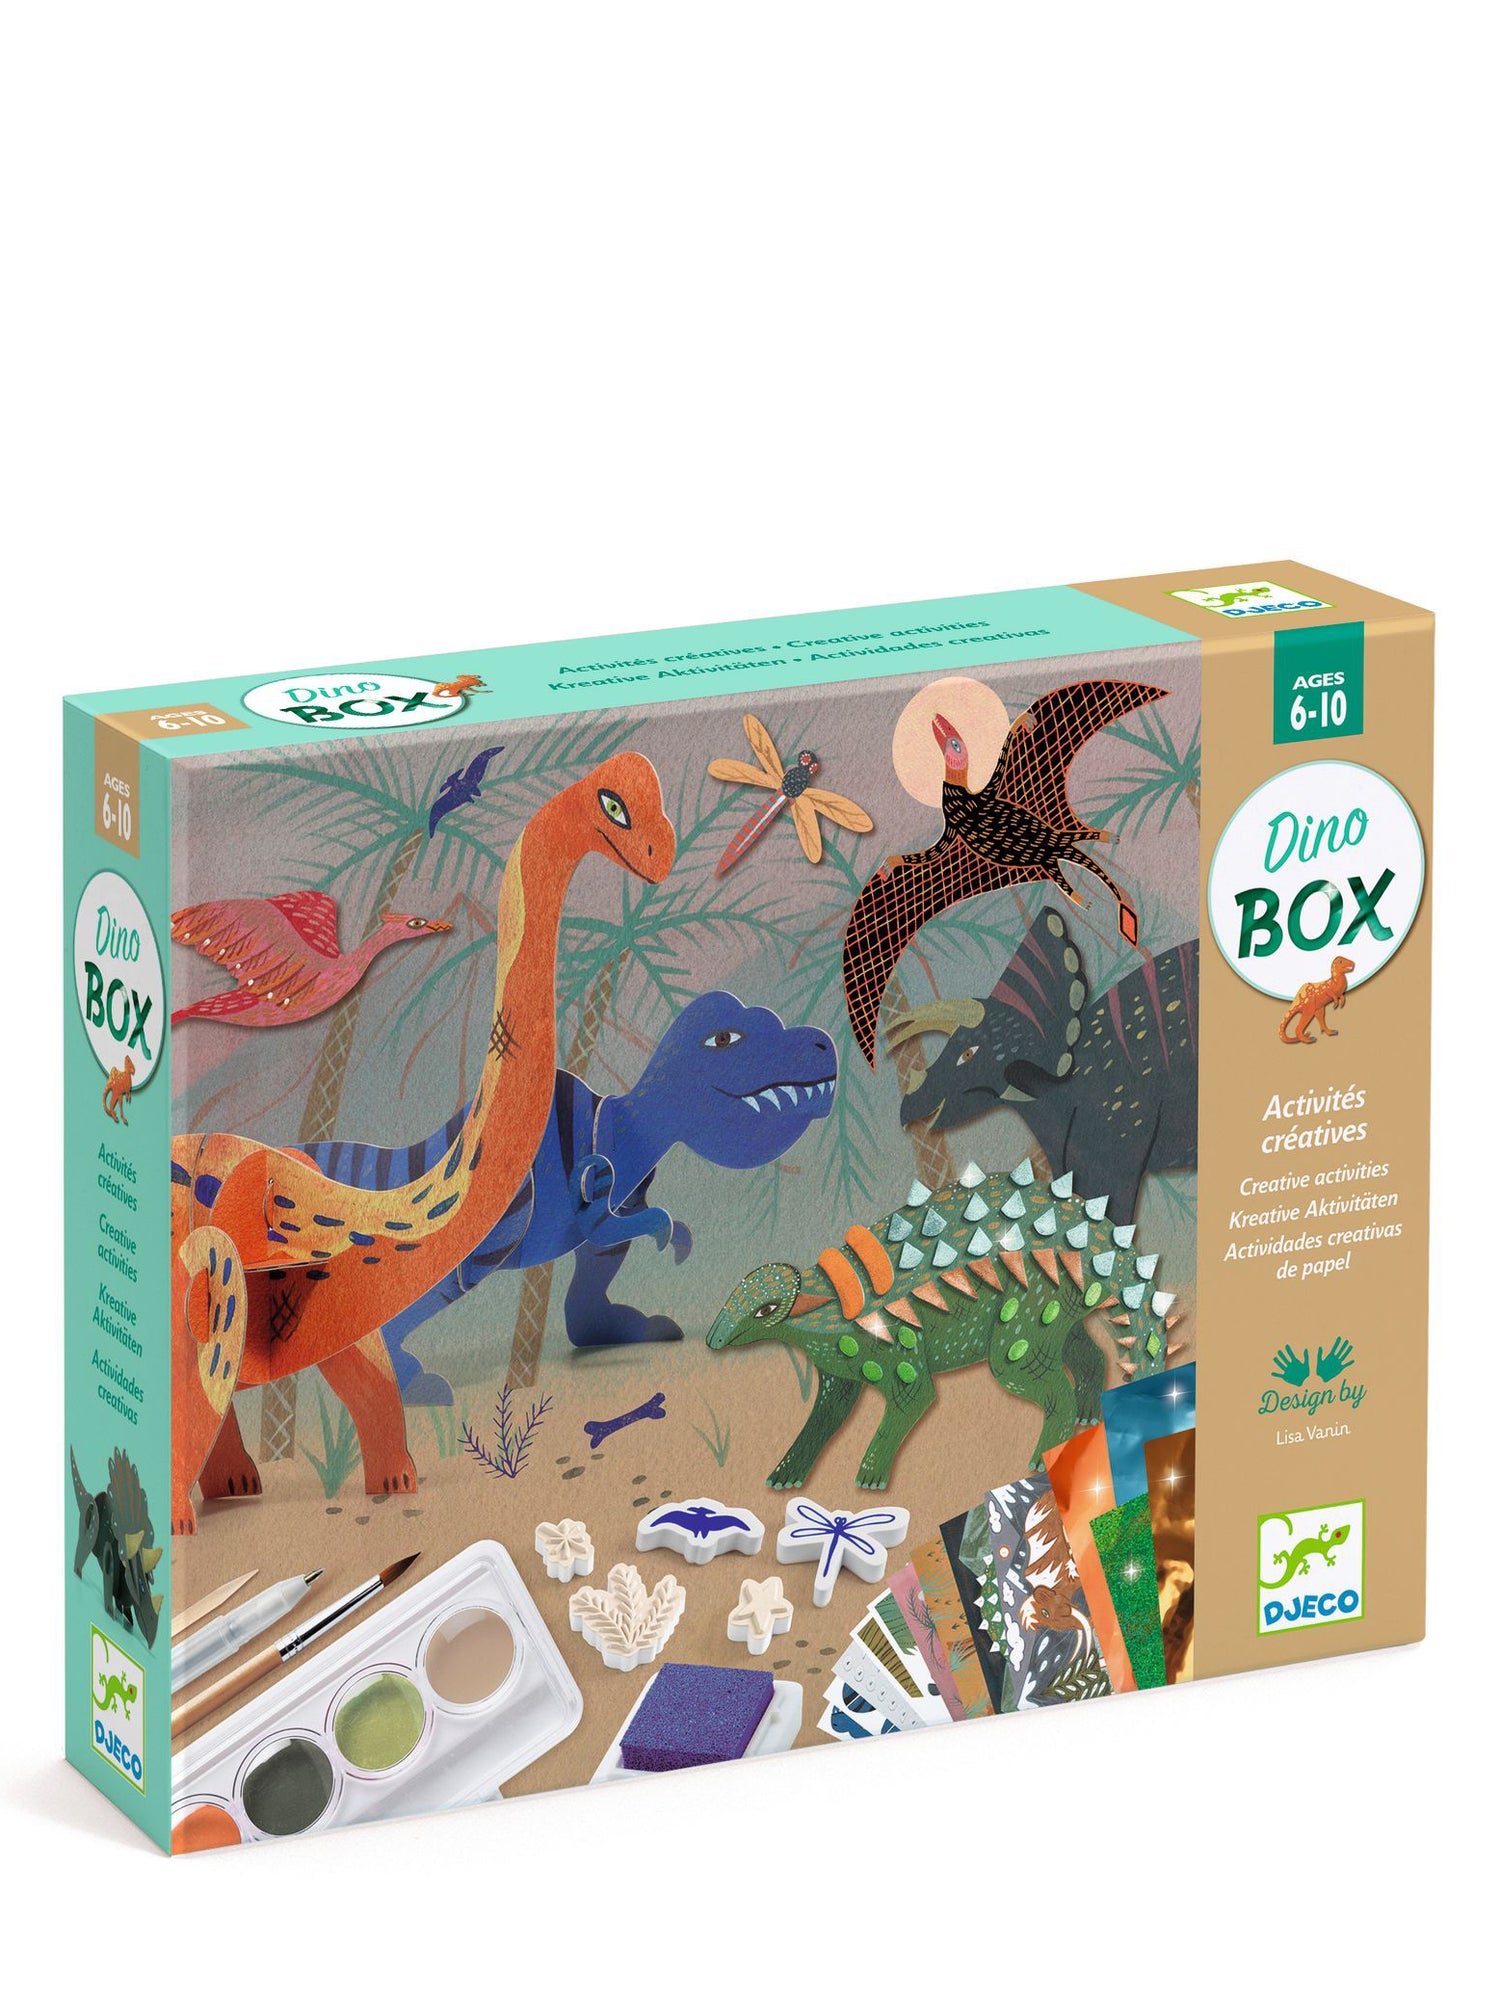 Dinosaurus Box - Crafts Set